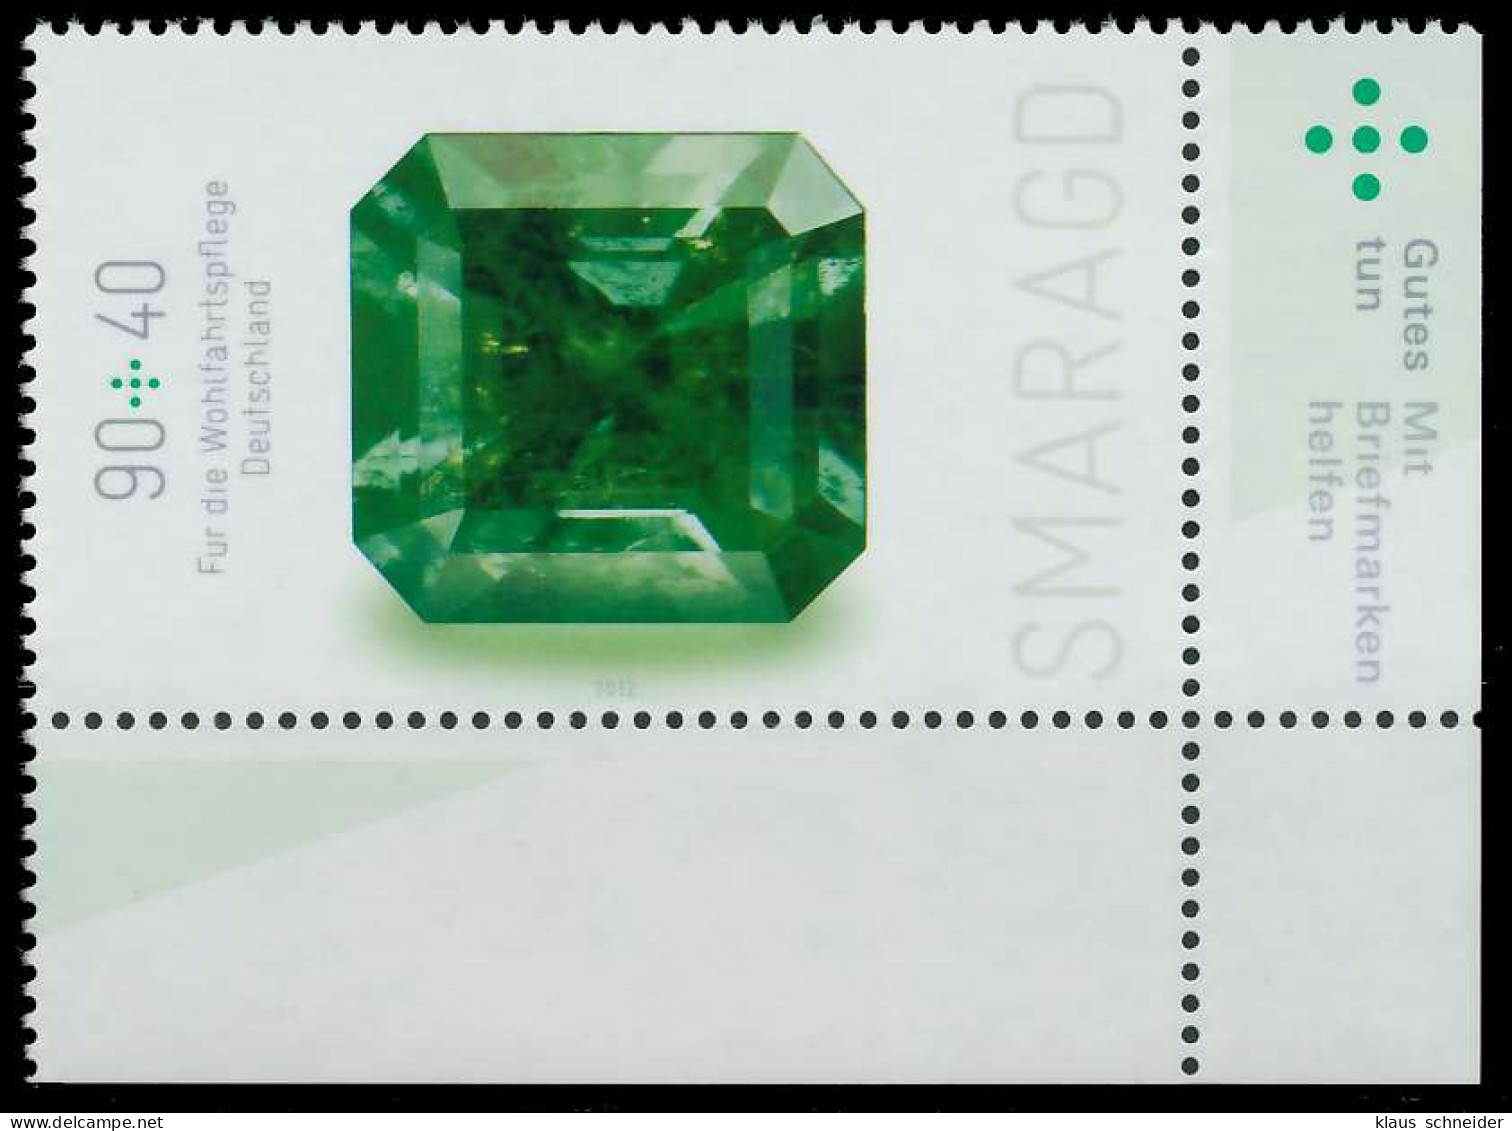 BRD BUND 2012 Nr 2902 Postfrisch ECKE-URE X325CBE - Unused Stamps